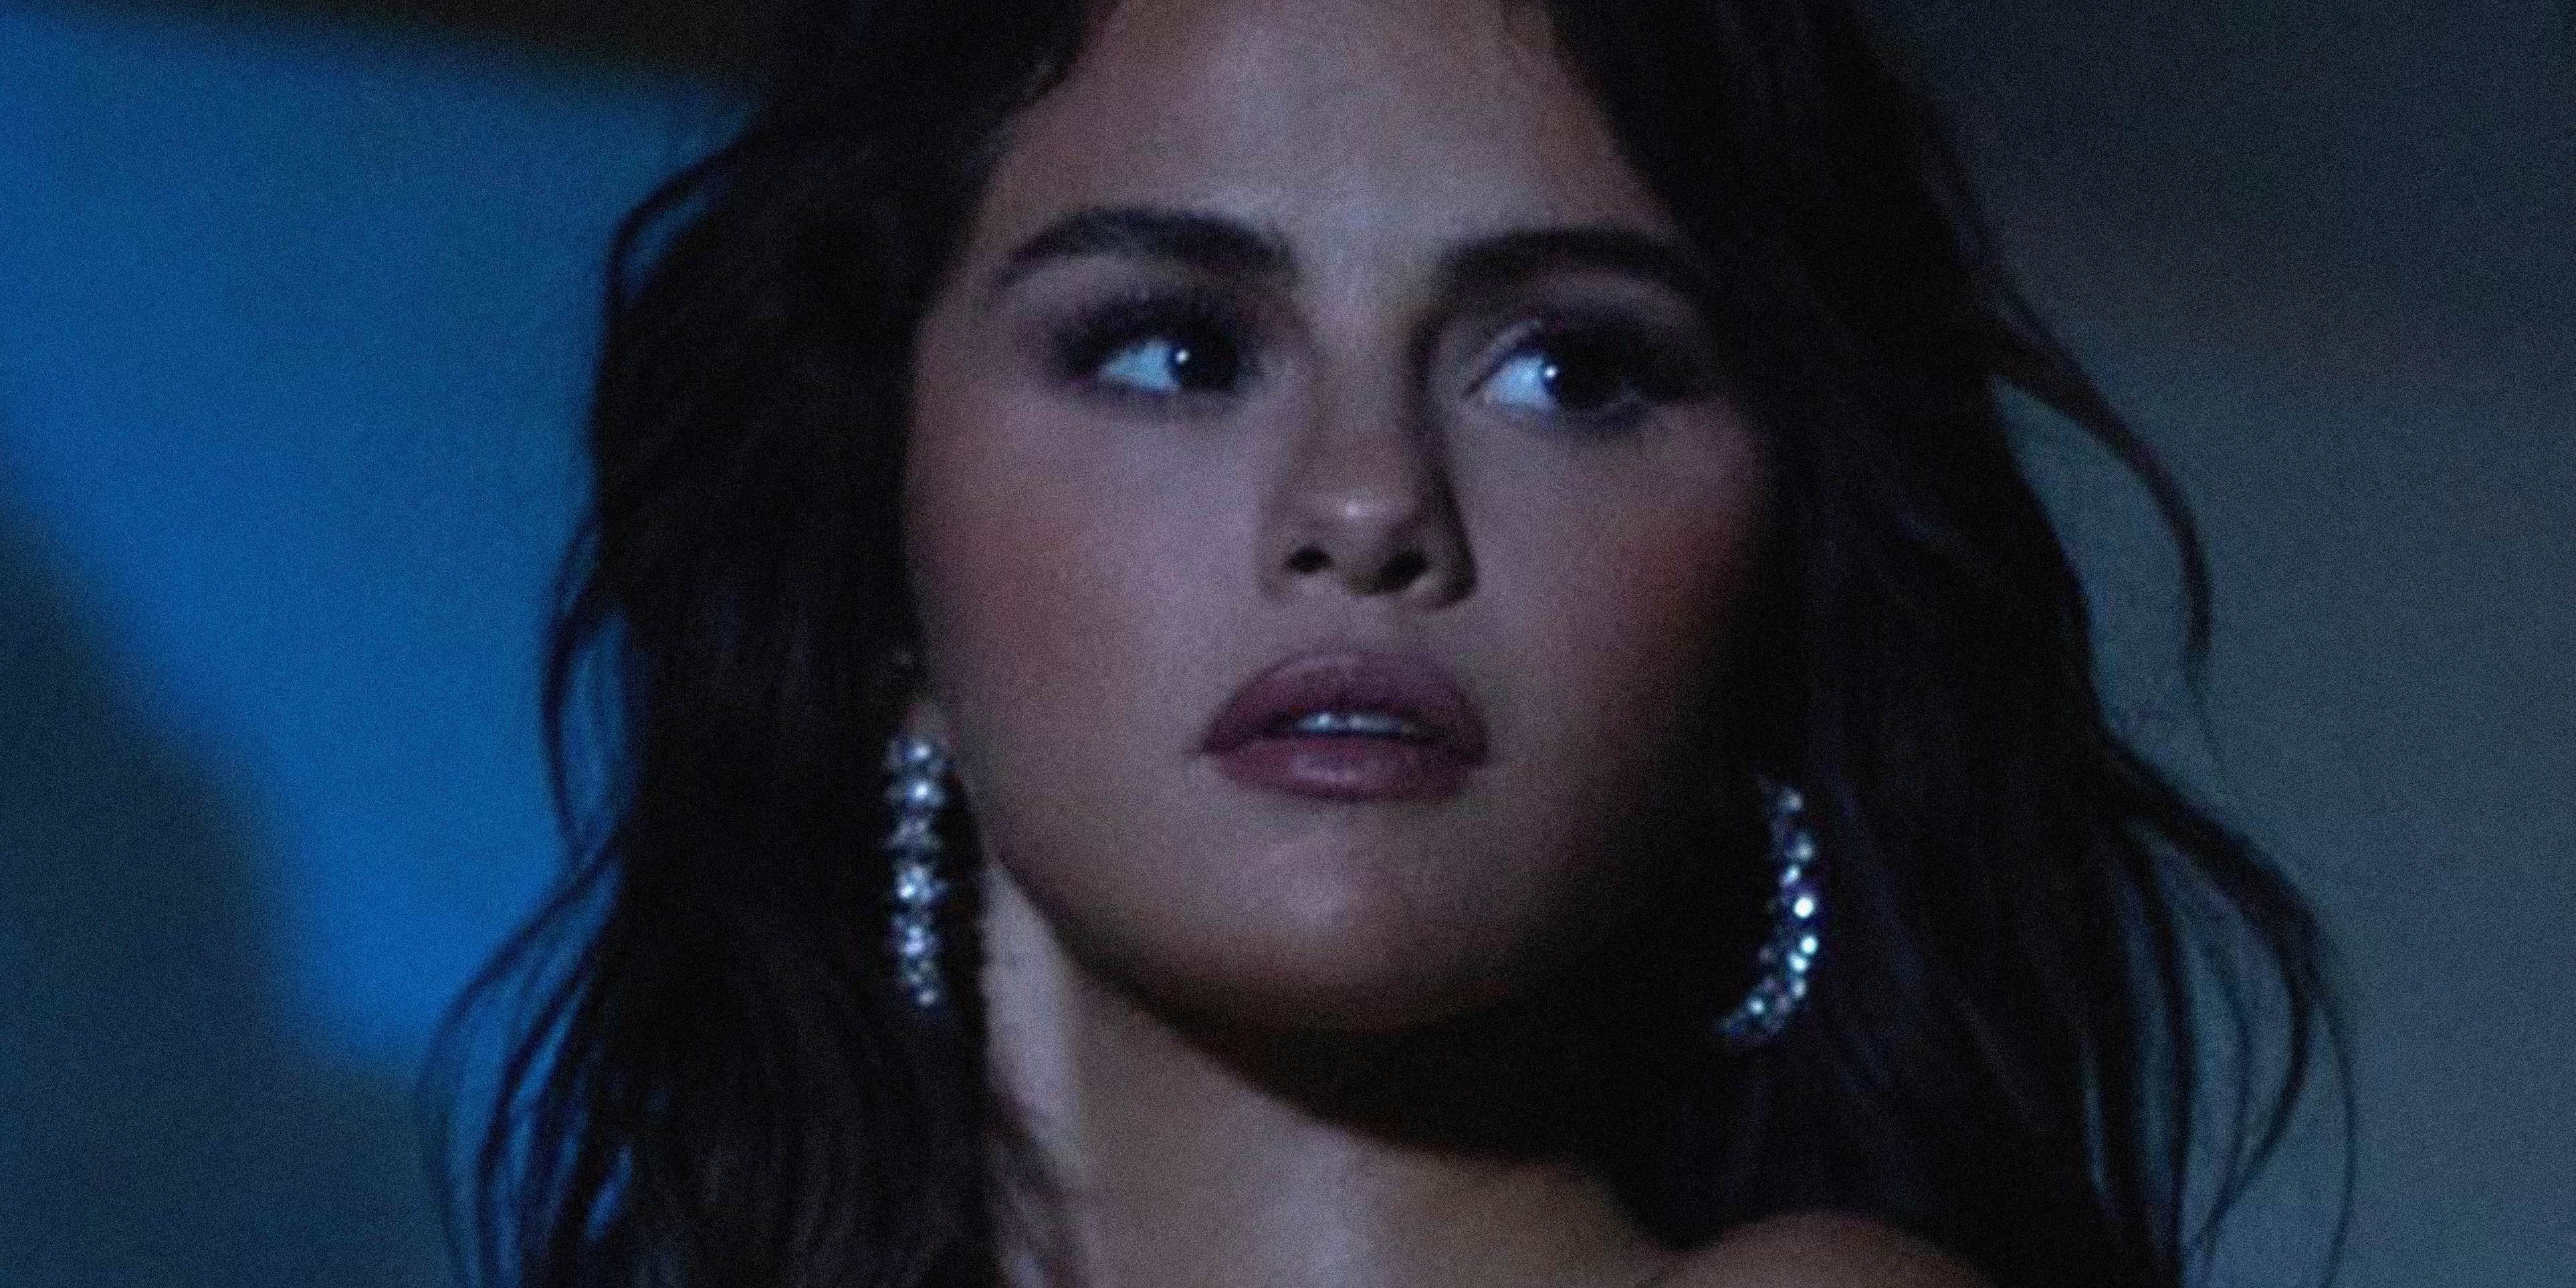 Selena Gomez Announces Spanish Language EP, Shares New Song “Baila Conmigo”: Listen